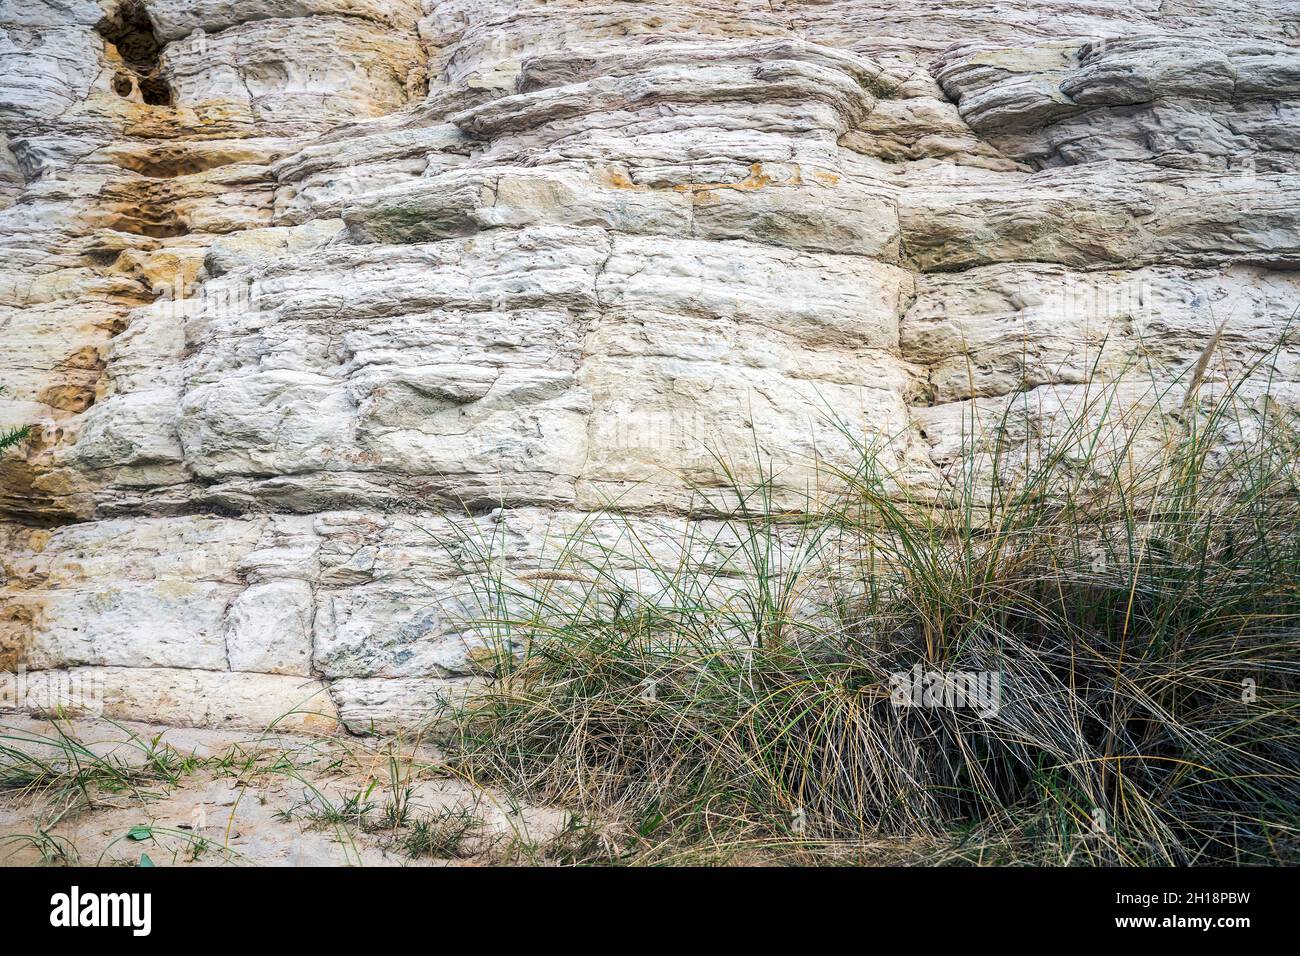 Capas de piedra arenisca formadas durante el período Eoceno que conforman el acantilado este en Bournemouth en Dorset Reino Unido Foto de stock